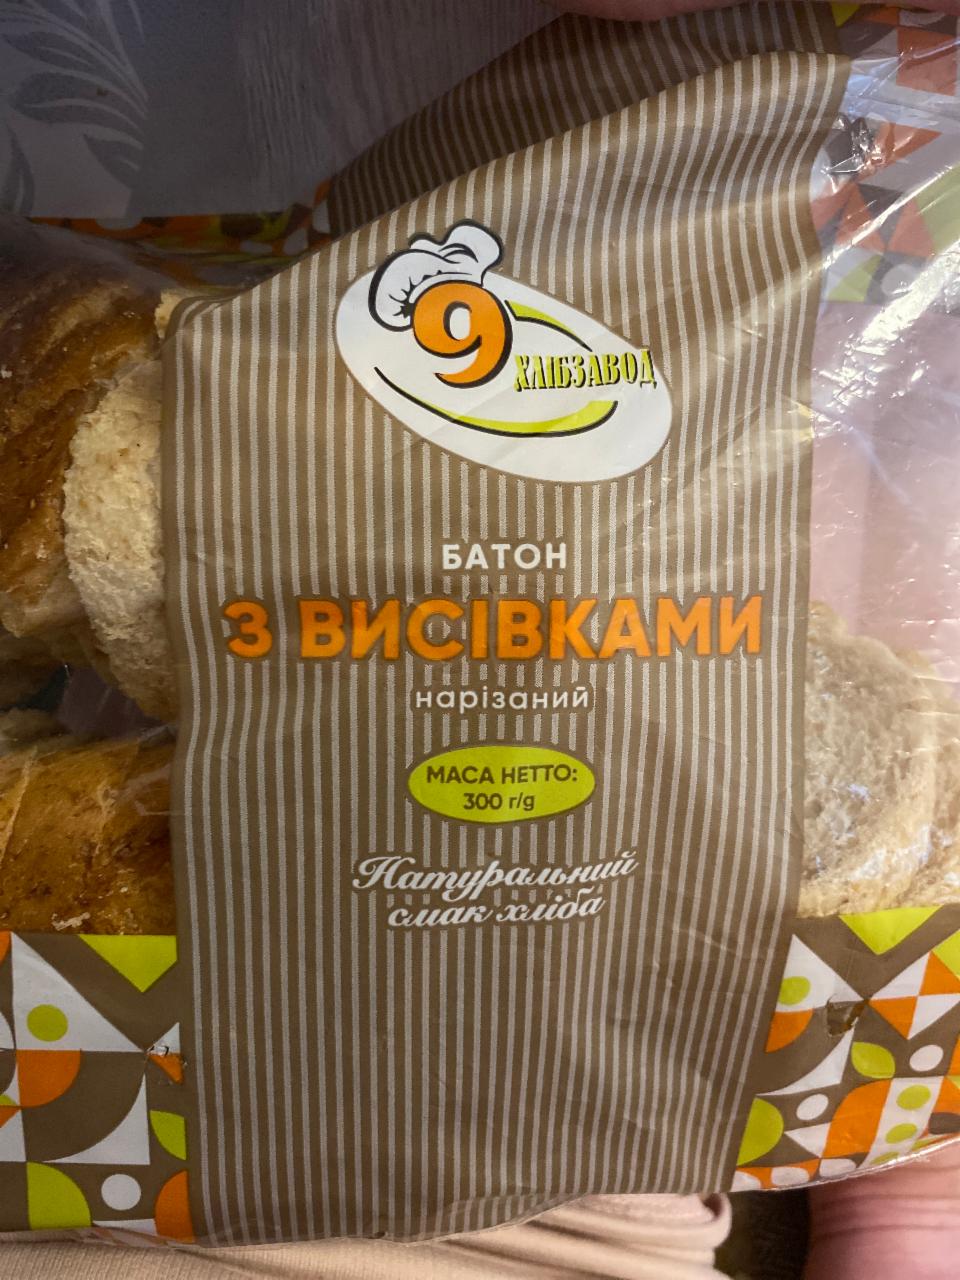 Фото - Батон з висівками 9 хлібзавод